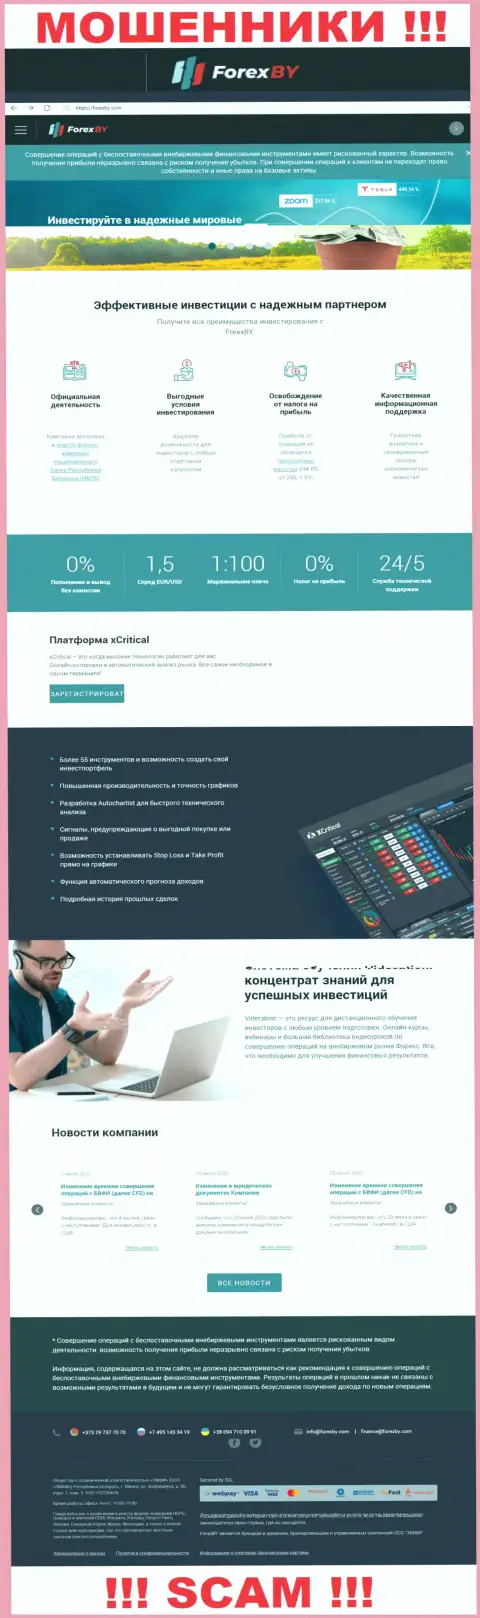 Официальный онлайн-сервис мошенников ФорексБИ